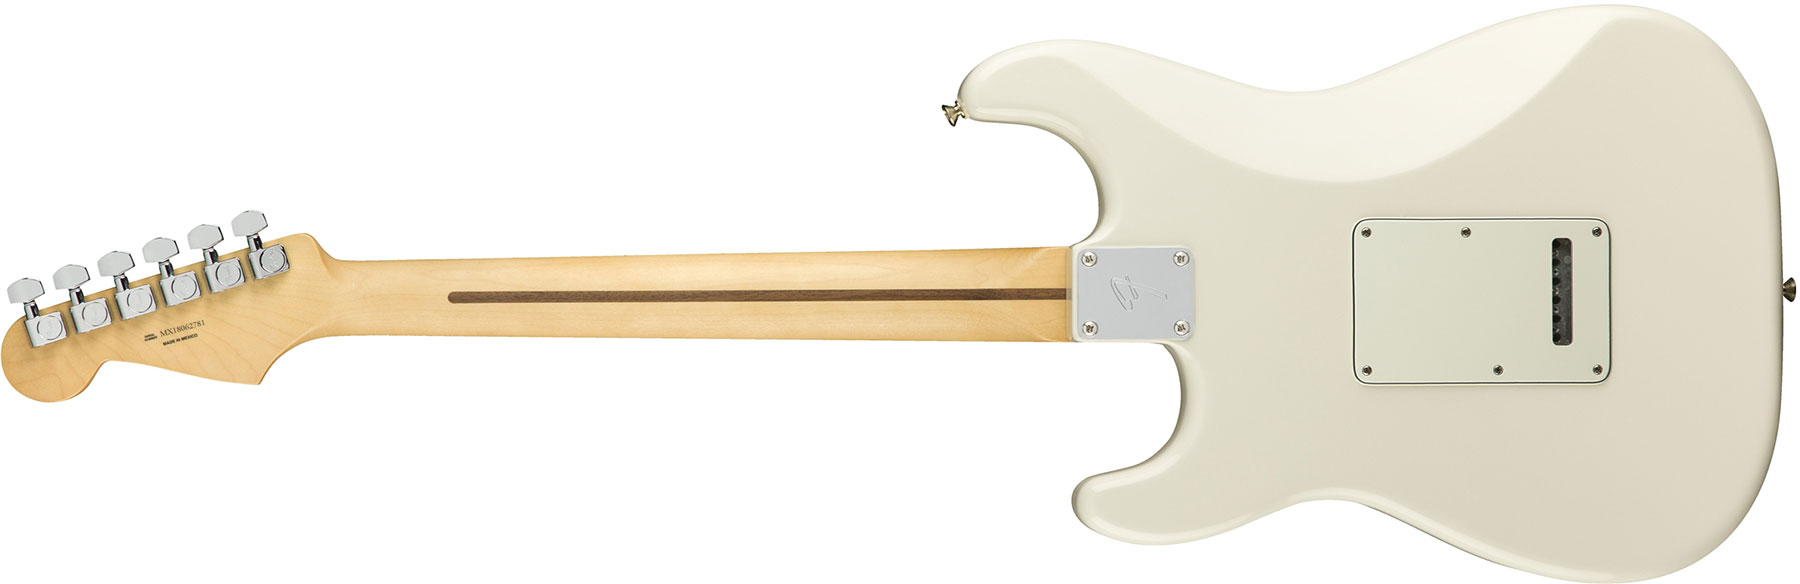 Fender Strat Player Mex Sss Mn - Polar White - E-Gitarre in Str-Form - Variation 1